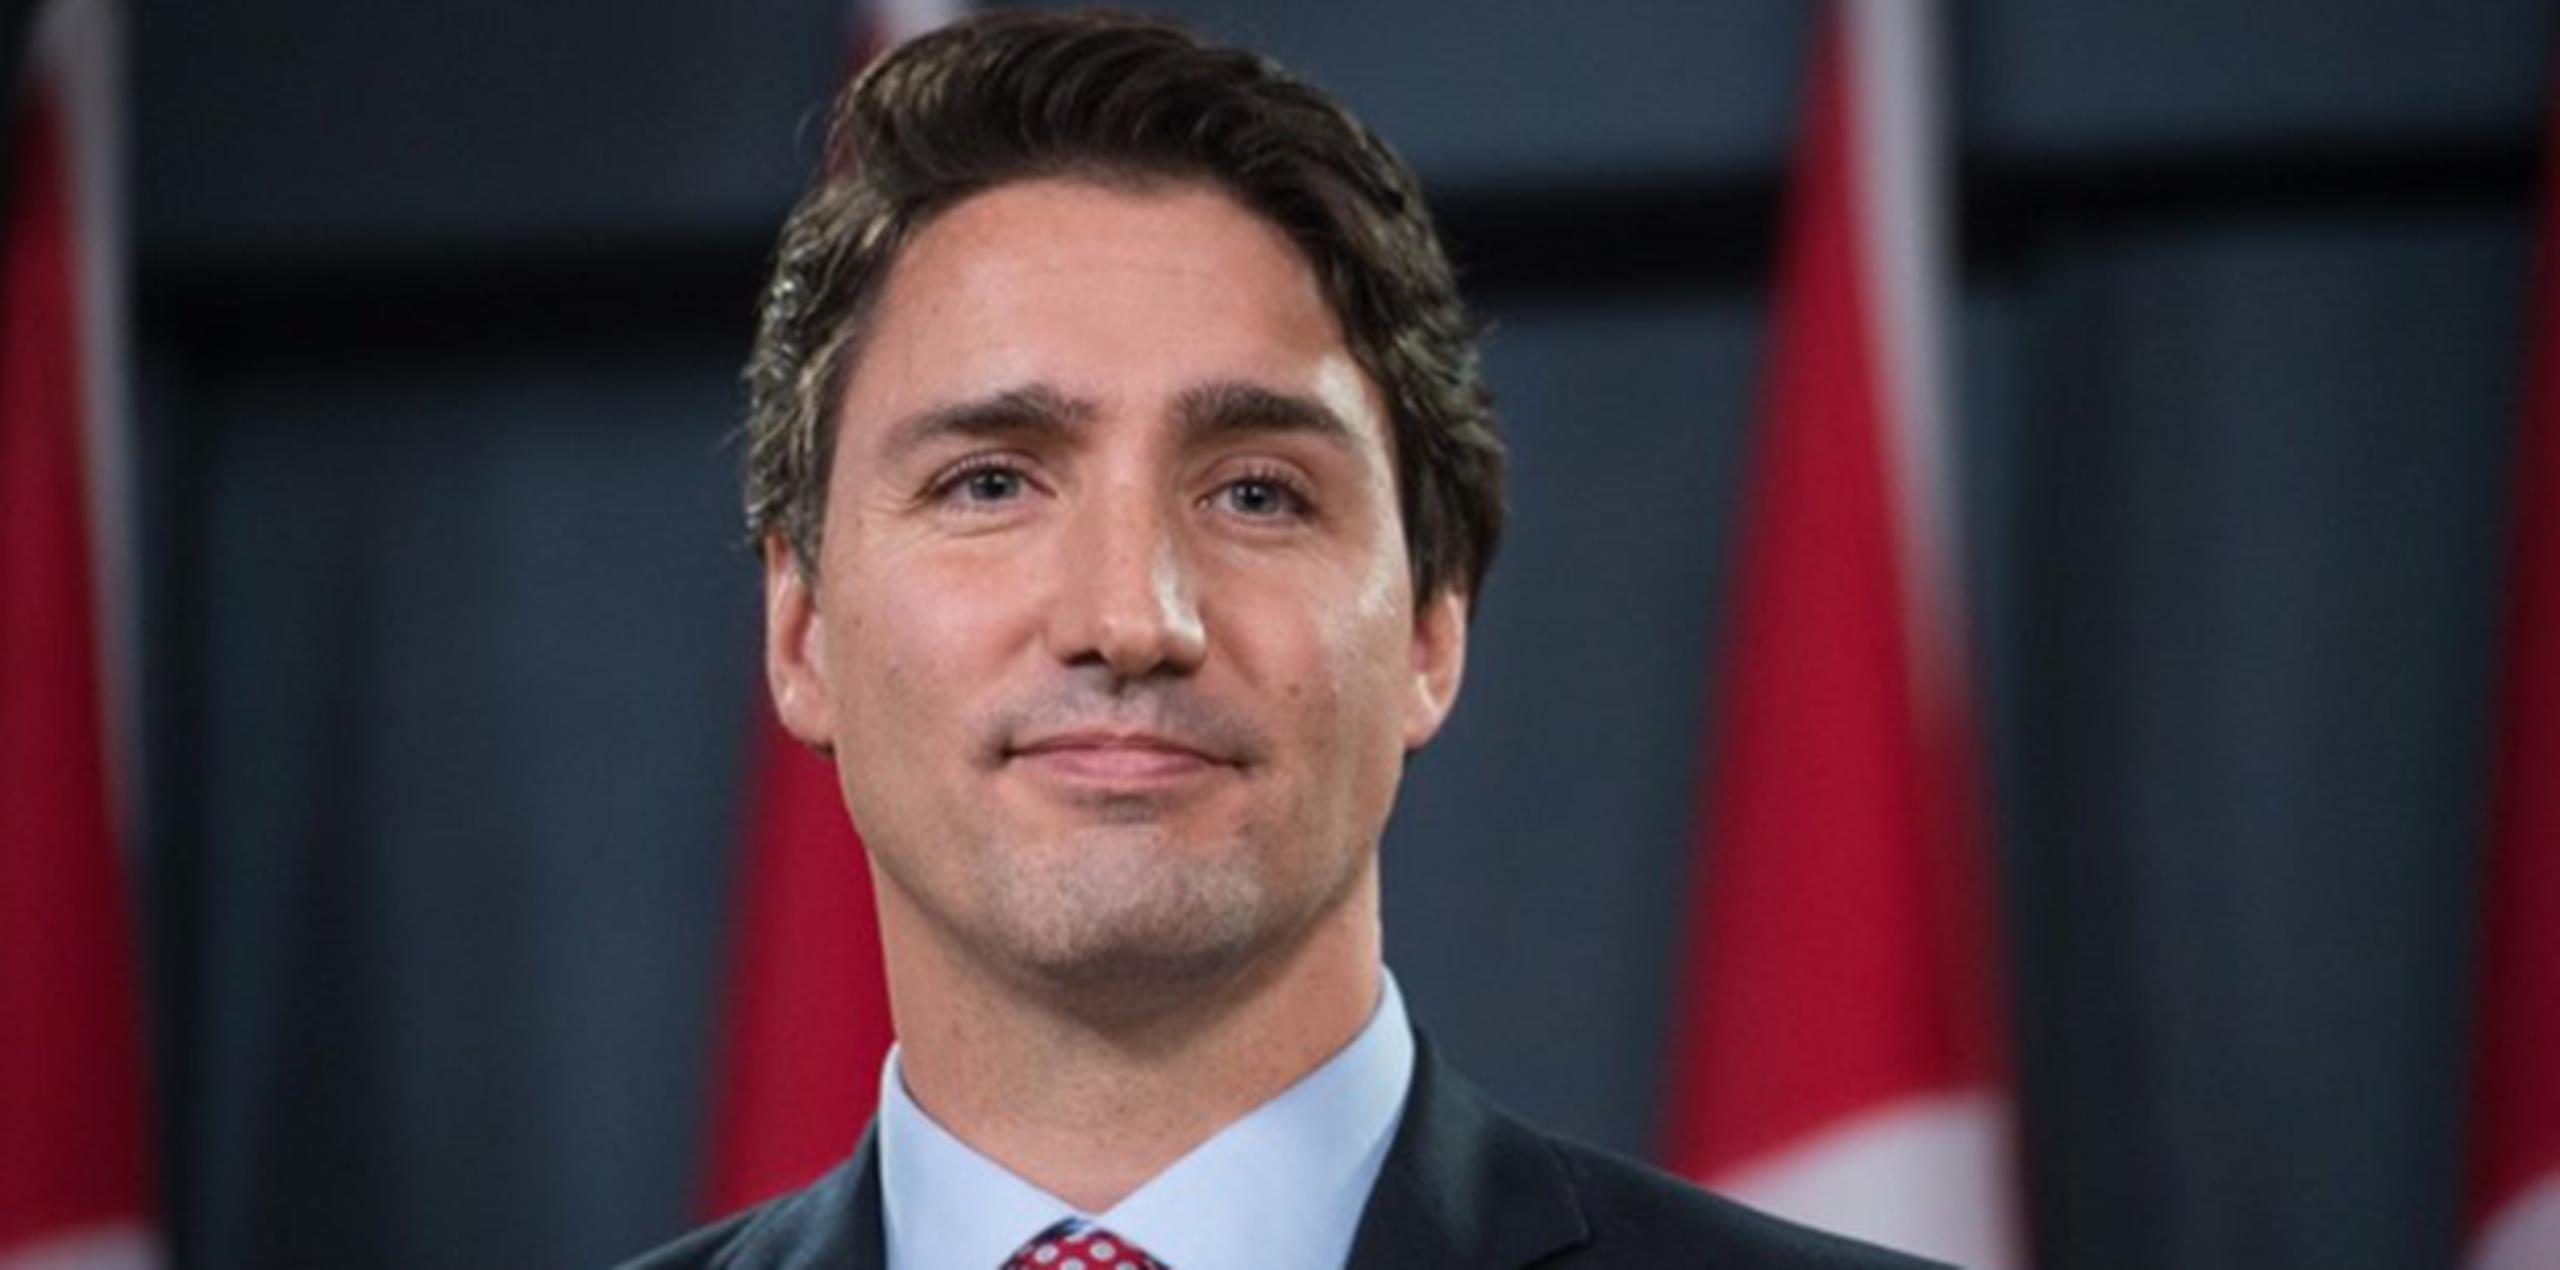 Trudeau, de 43 años y quien trabajó como maestro de escuela y ha sido parlamentario desde el 2008, es el segundo primer ministro más joven en la historia del país. (AFP PHOTO/NICHOLAS KAMM)